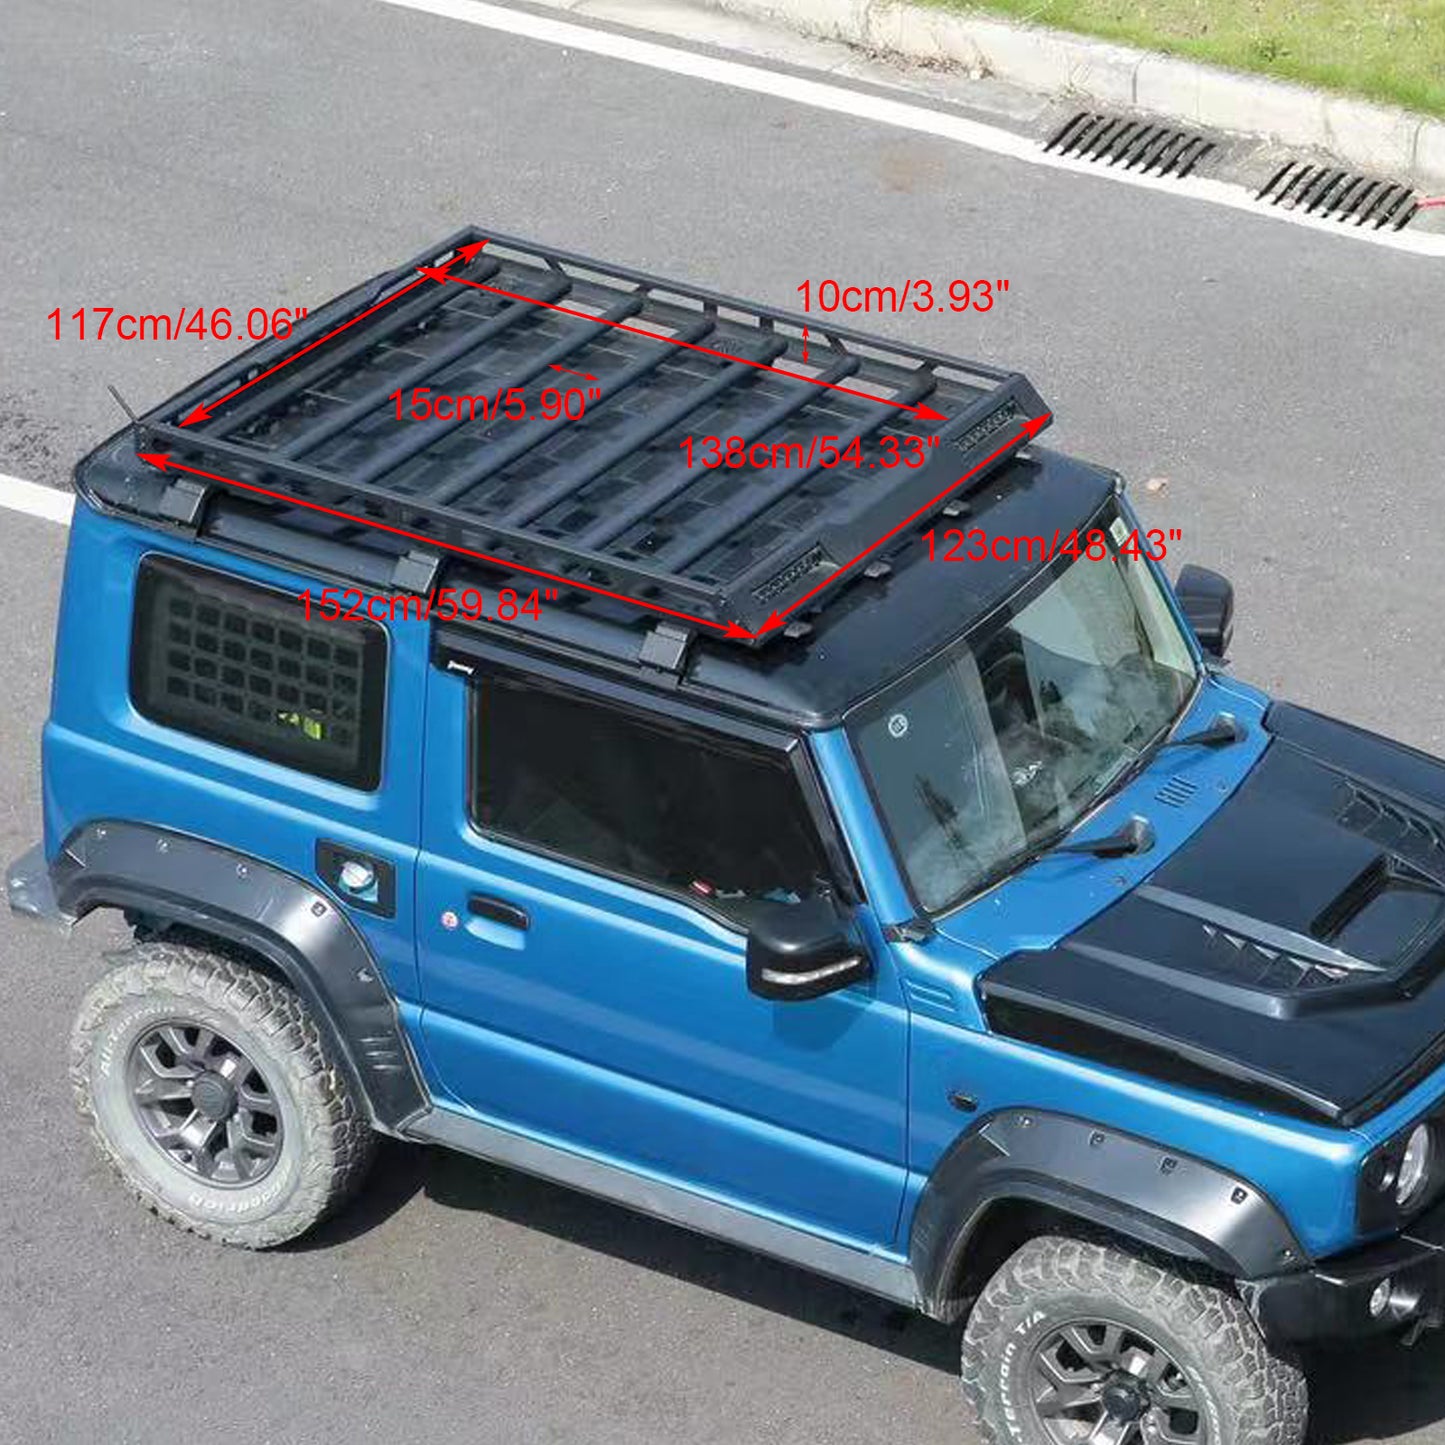 2019-2023 Suzuki Jimny W/ Led Light Aluminium Roof Rack Luggage Rack